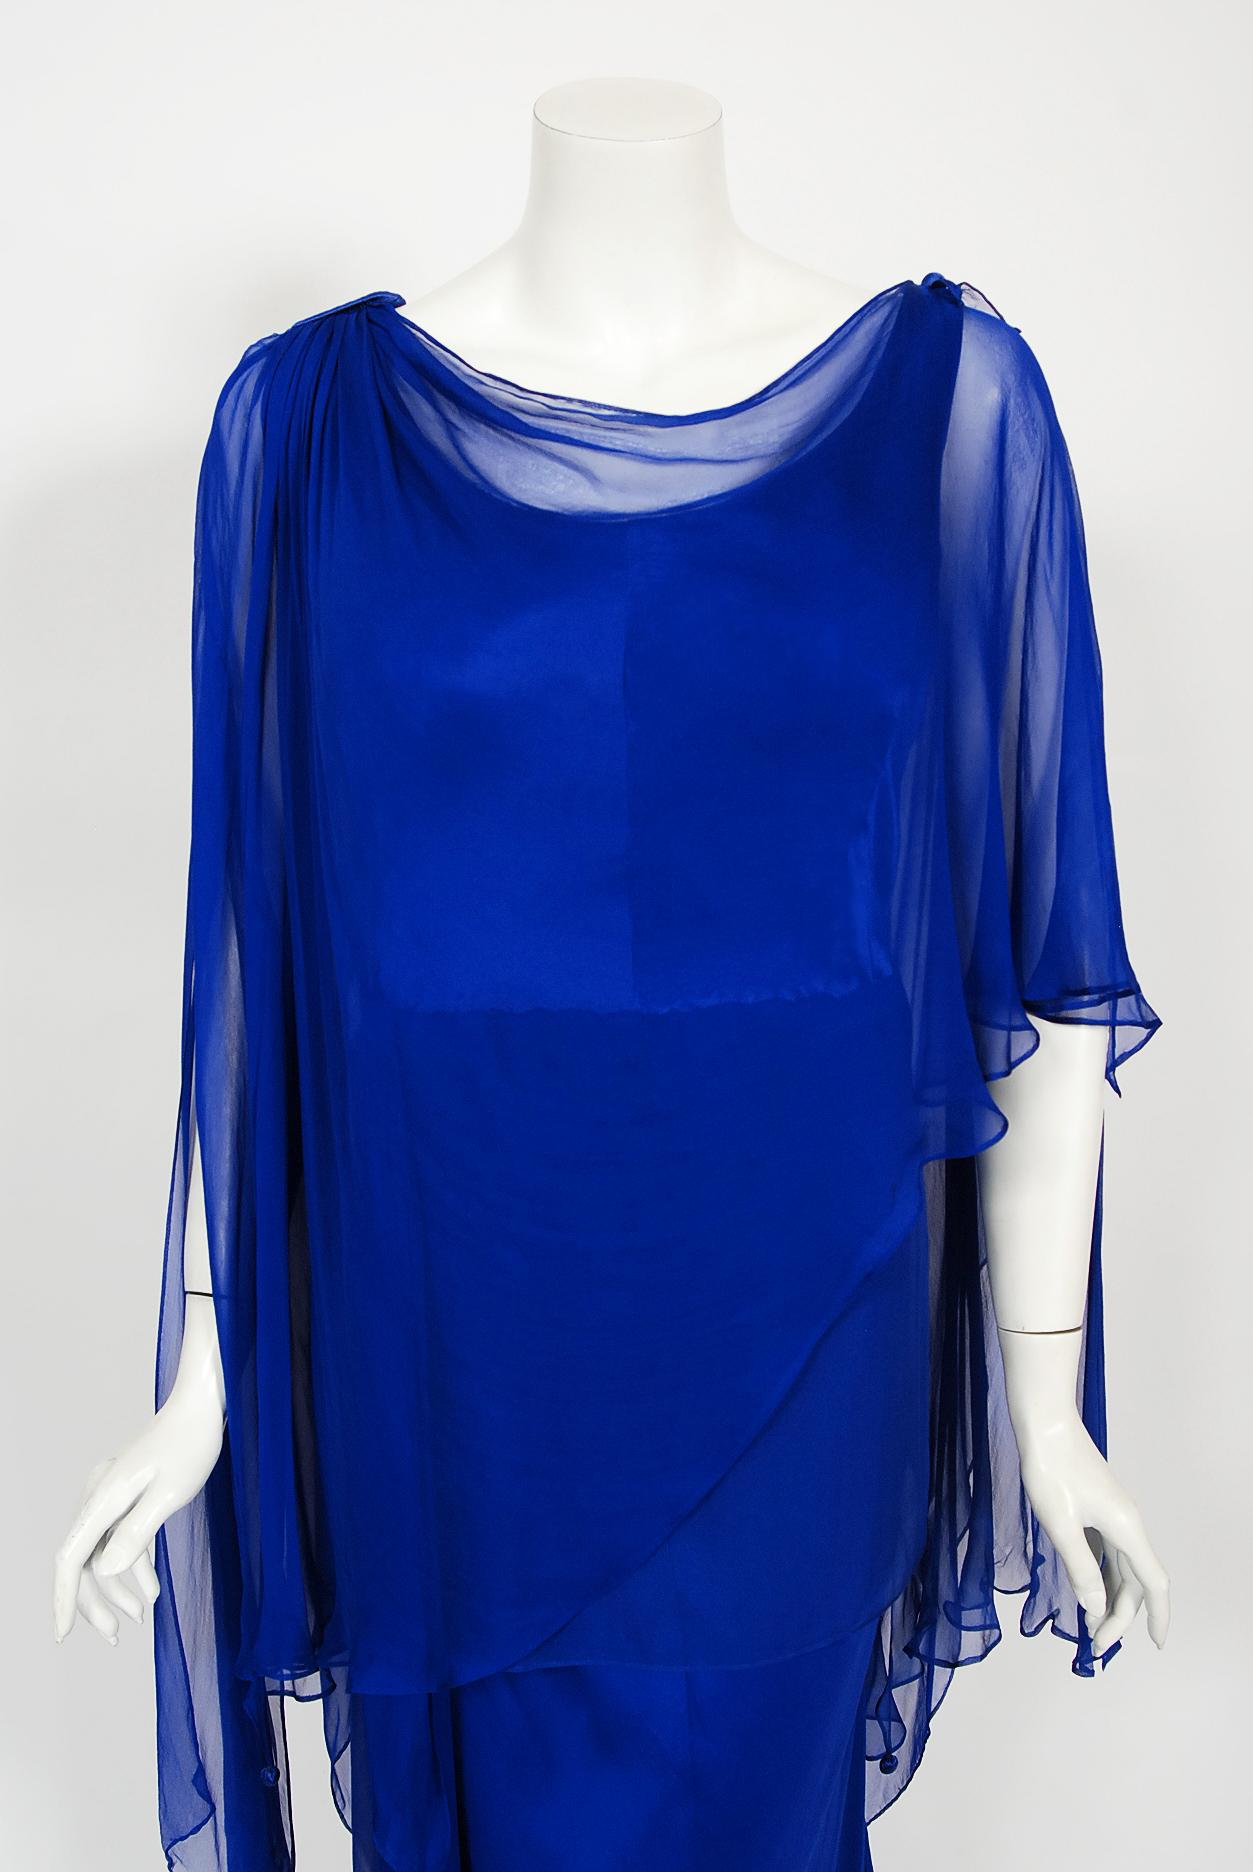 Ein wunderschönes, nummeriertes Haute-Couture-Kleid aus königsblauem Seidenchiffon mit Drapierungen aus der Herbst-Winter-Kollektion 1967 von Givenchy. Dieses Kleid im Kaftan-Stil wurde für eine Kundin mit größeren Maßen angefertigt, was immer